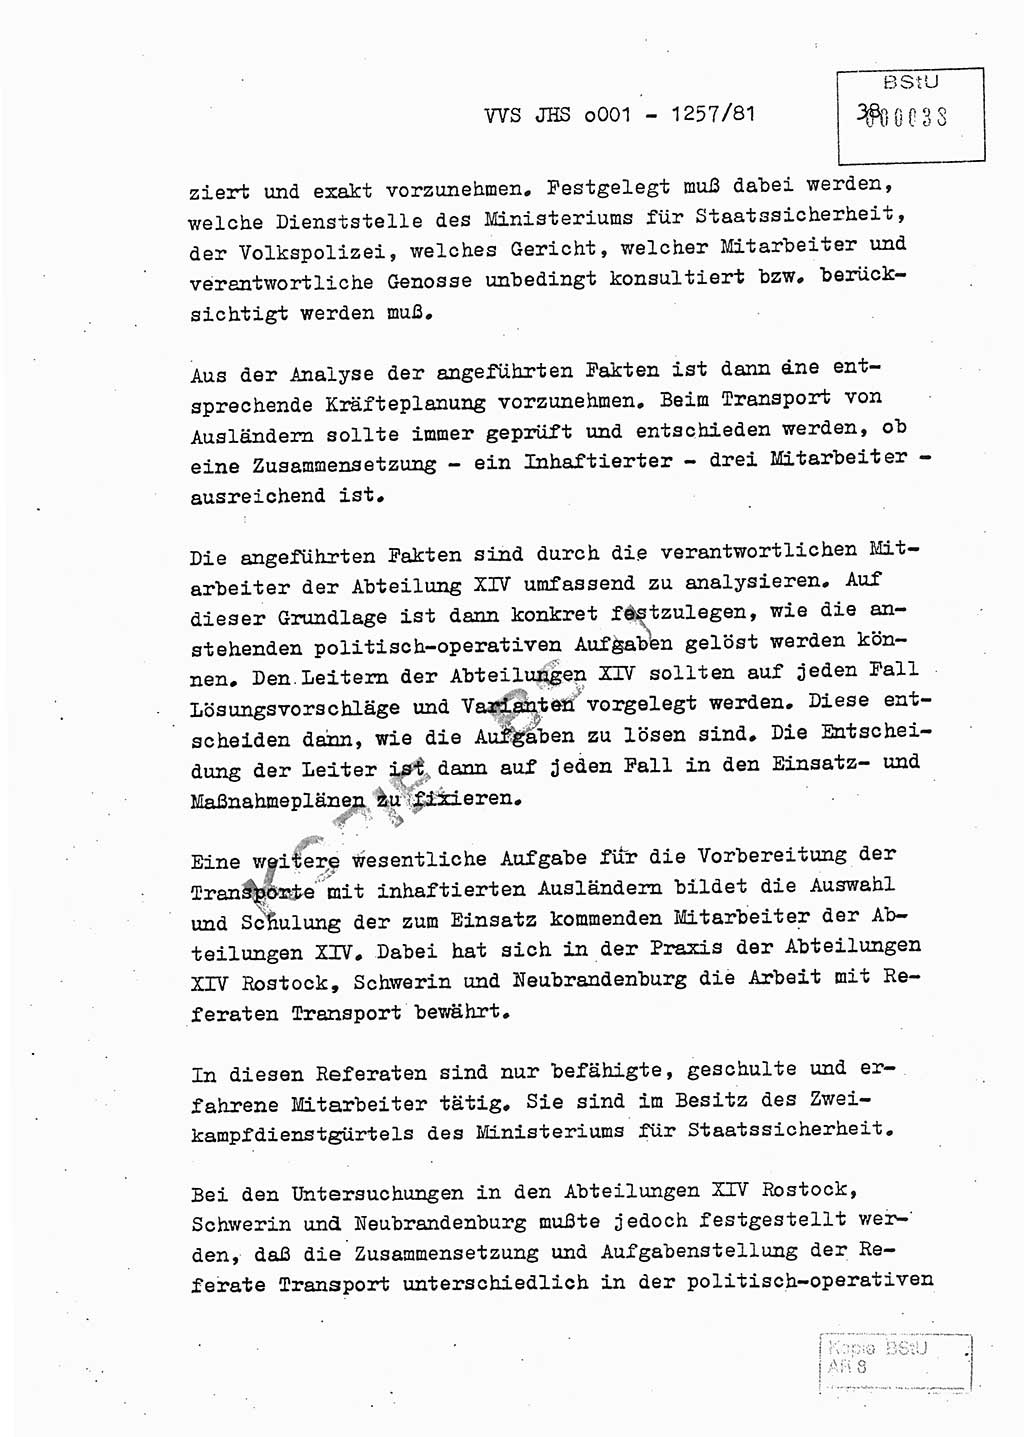 Fachschulabschlußarbeit Unterleutnant Dieter Möller (BV Rst. Abt. ⅩⅣ), Ministerium für Staatssicherheit (MfS) [Deutsche Demokratische Republik (DDR)], Juristische Hochschule (JHS), Vertrauliche Verschlußsache (VVS) o001-1257/81, Potsdam 1982, Seite 38 (FS-Abschl.-Arb. MfS DDR JHS VVS o001-1257/81 1982, S. 38)